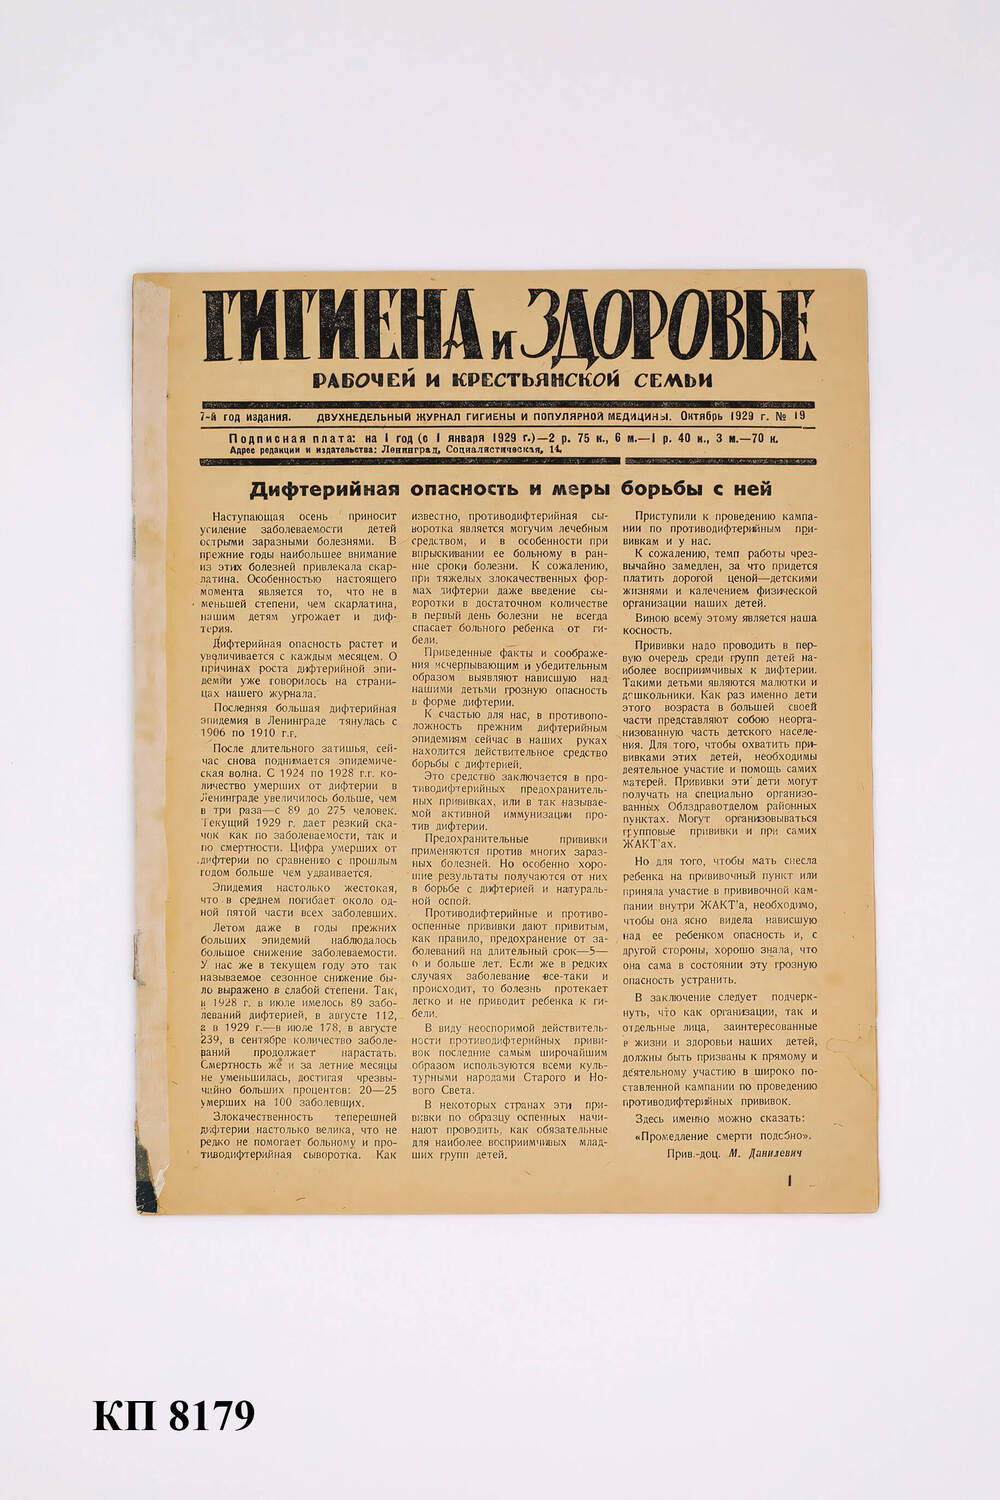 Журнал «Гигиена и здоровье рабочей и крестьянской семьи» № 19 октябрь 1929 г.